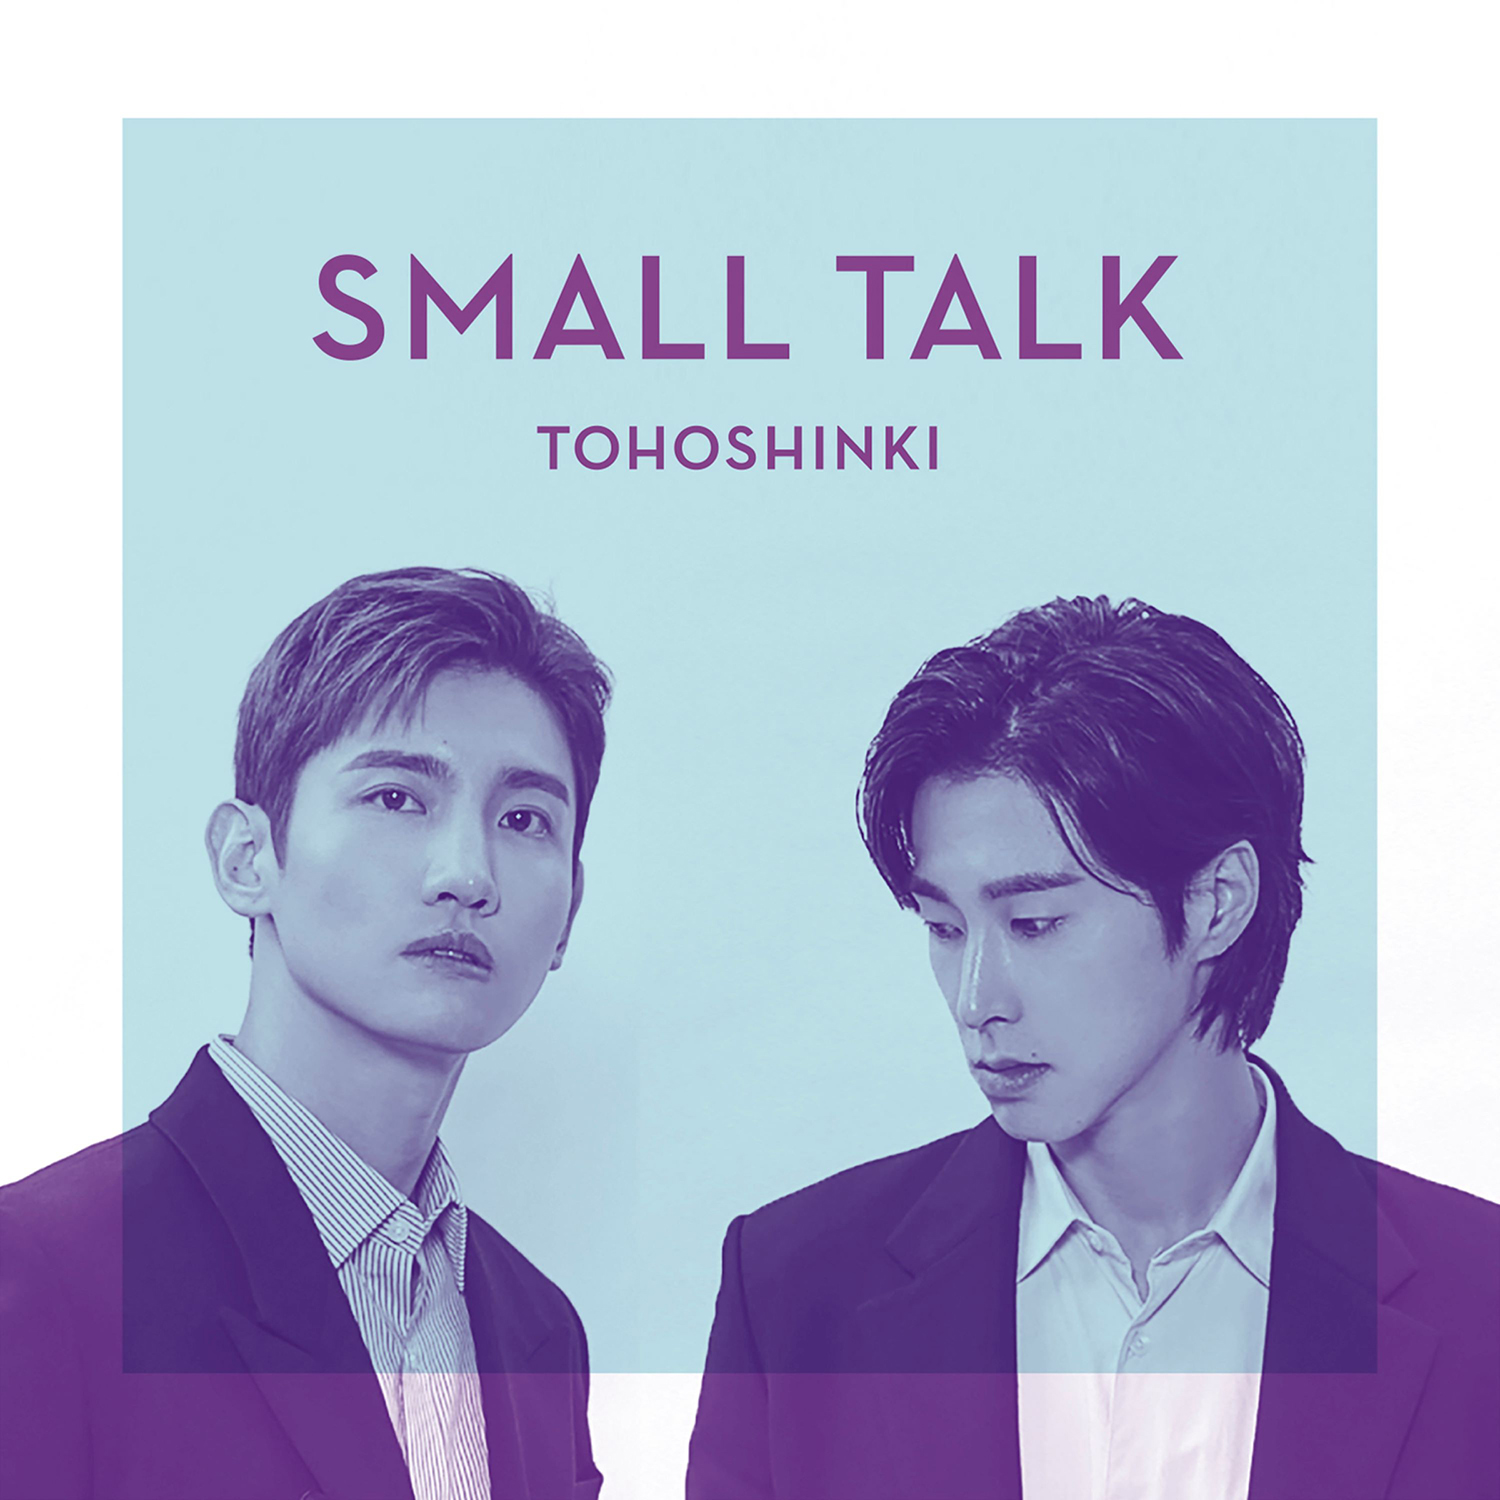 东方神起日文单曲《Small Talk》数字封面图.jpg